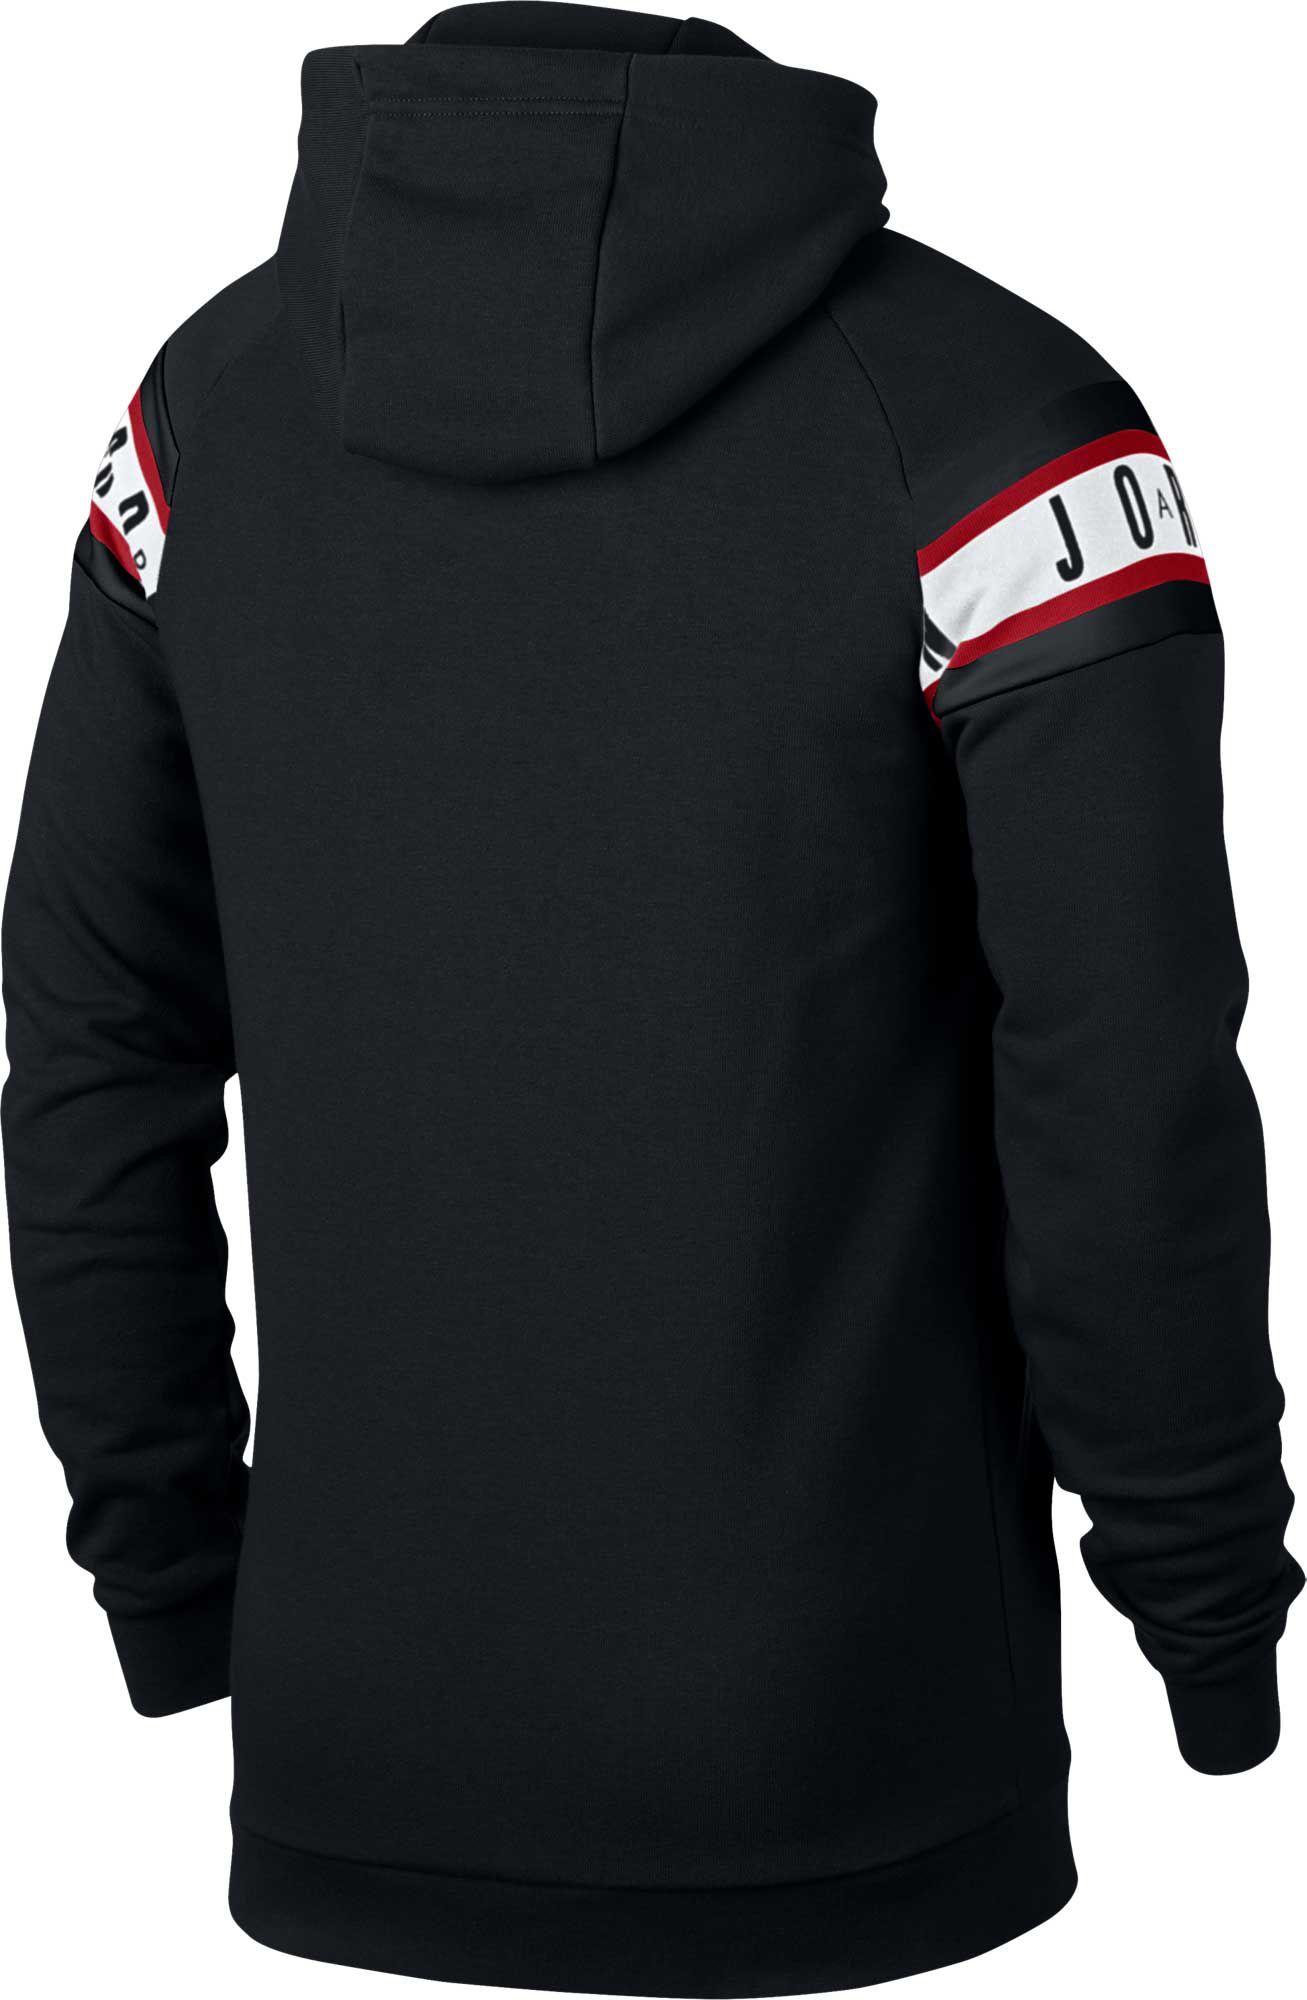 Nike Fleece Jumpman Air Hbr Full-zip Hoodie in Black/White (Black) for Men  | Lyst